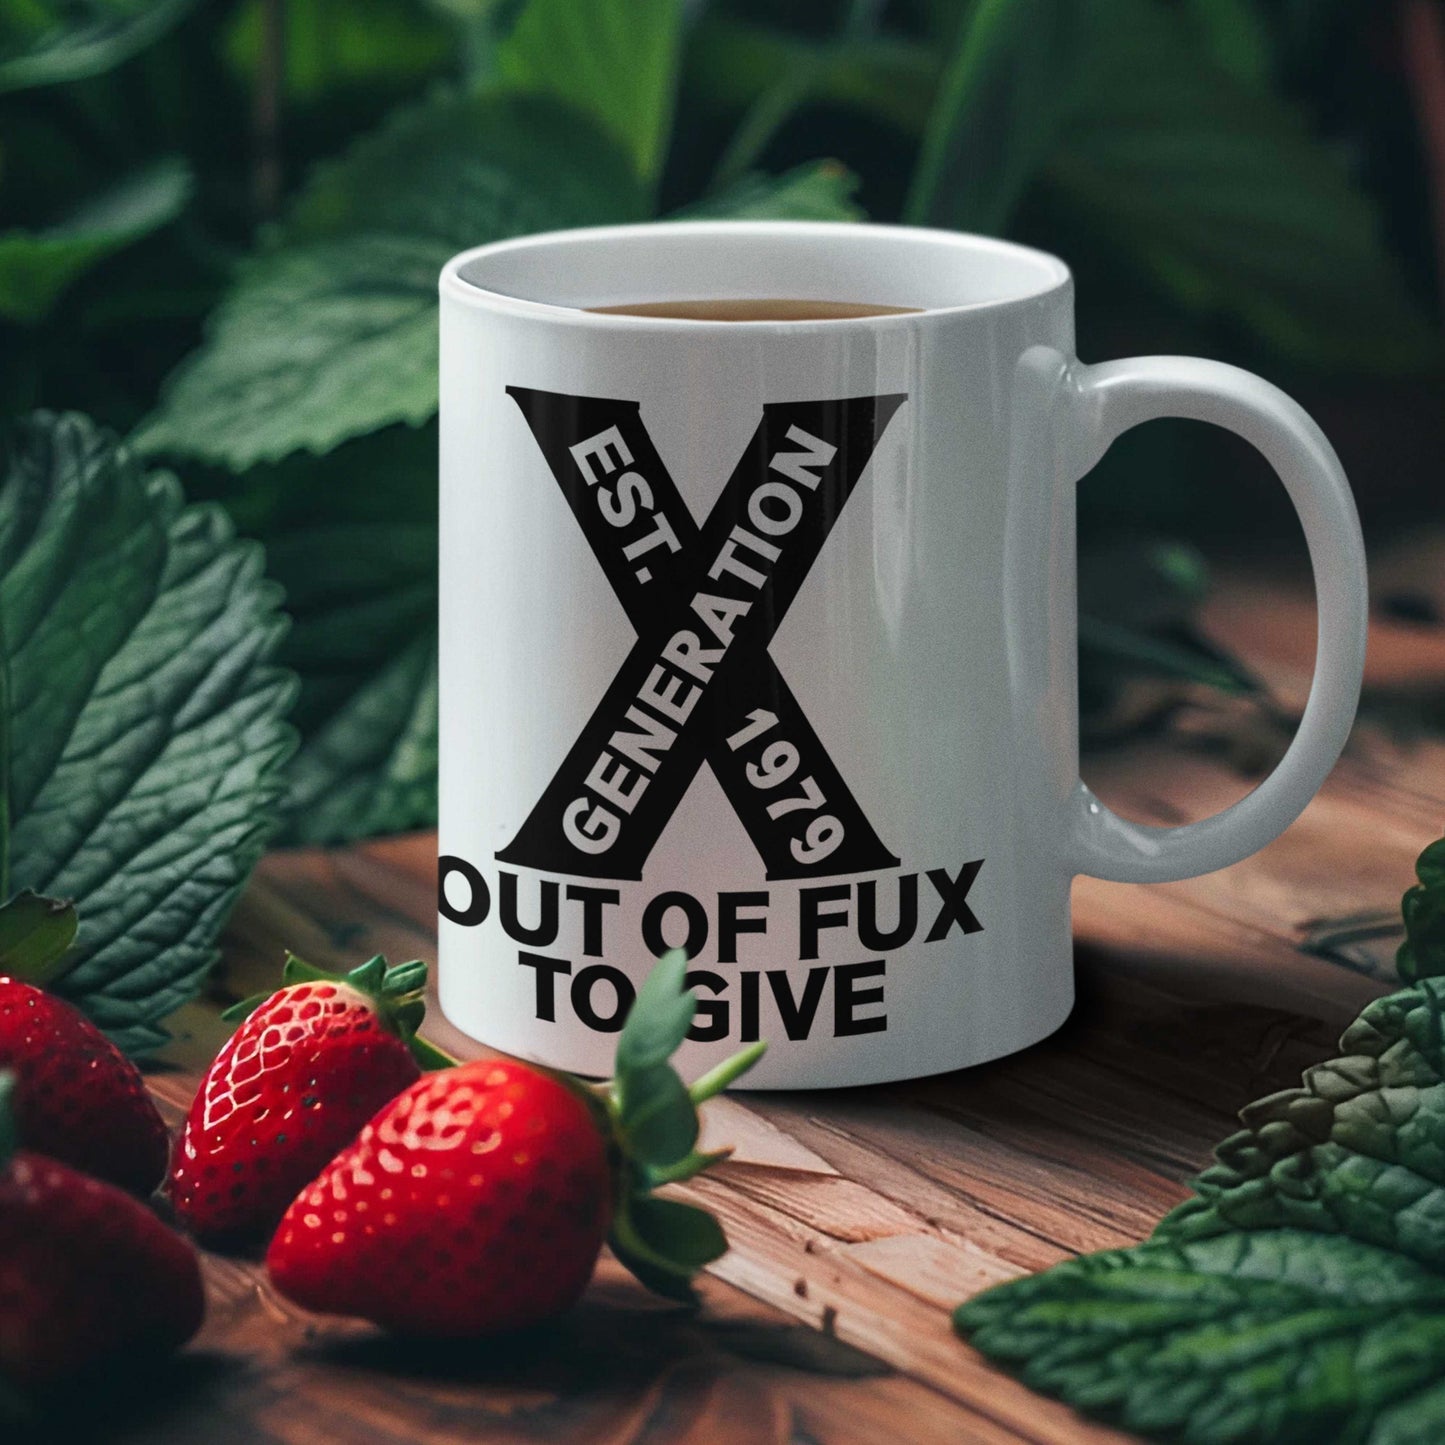 Generation X Mug or Tumbler - any year - Out of Fux to Give, Funny British Gift, Retro Nostalgic Mug/Tumbler